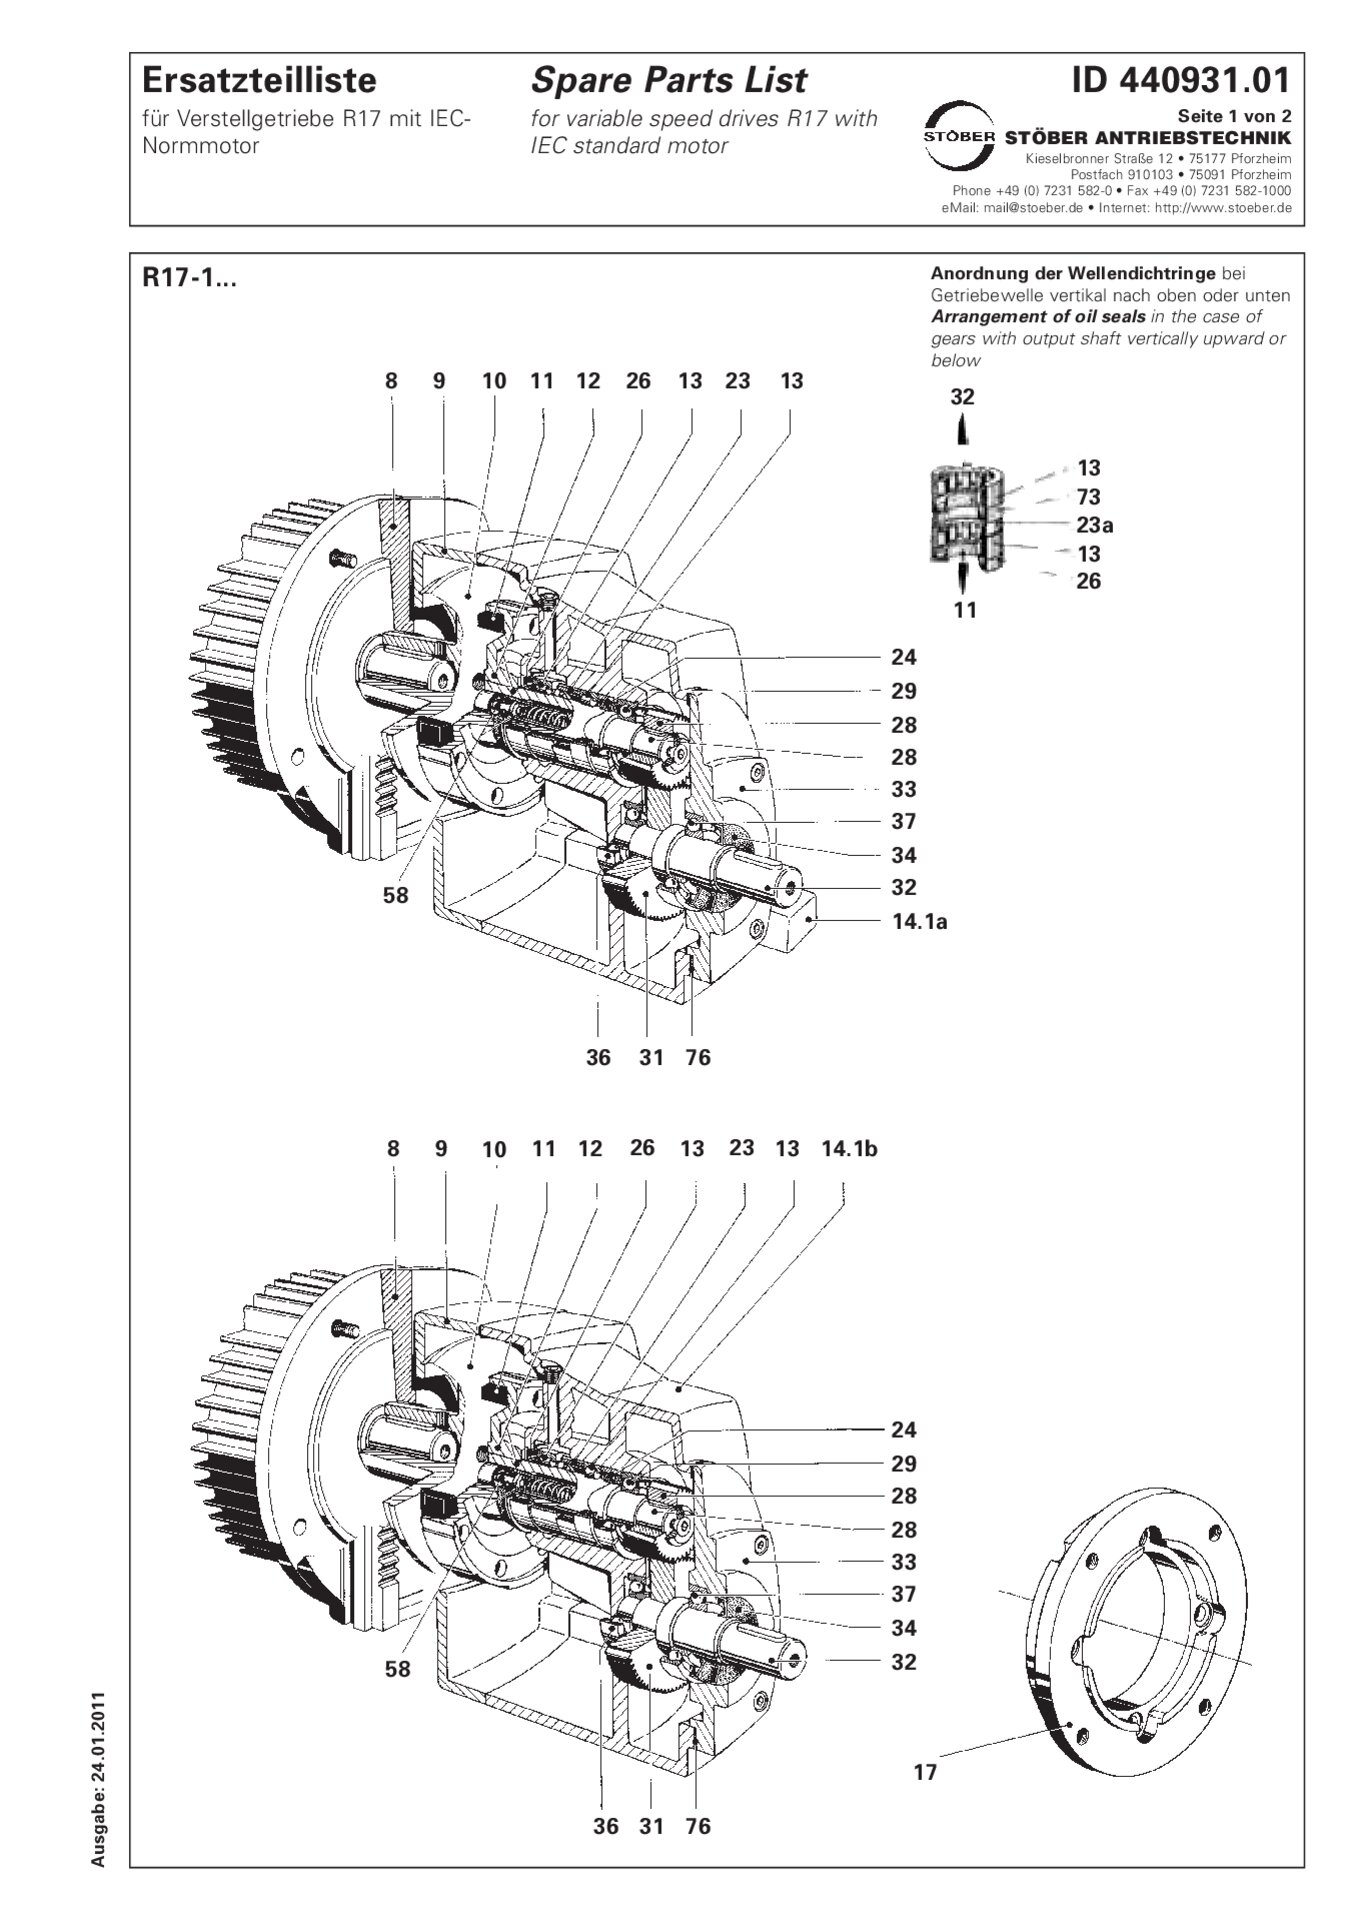 Spare parts list R17-1 with IEC standard motorErsatzteilliste R17-1 mit IEC-Normmotor